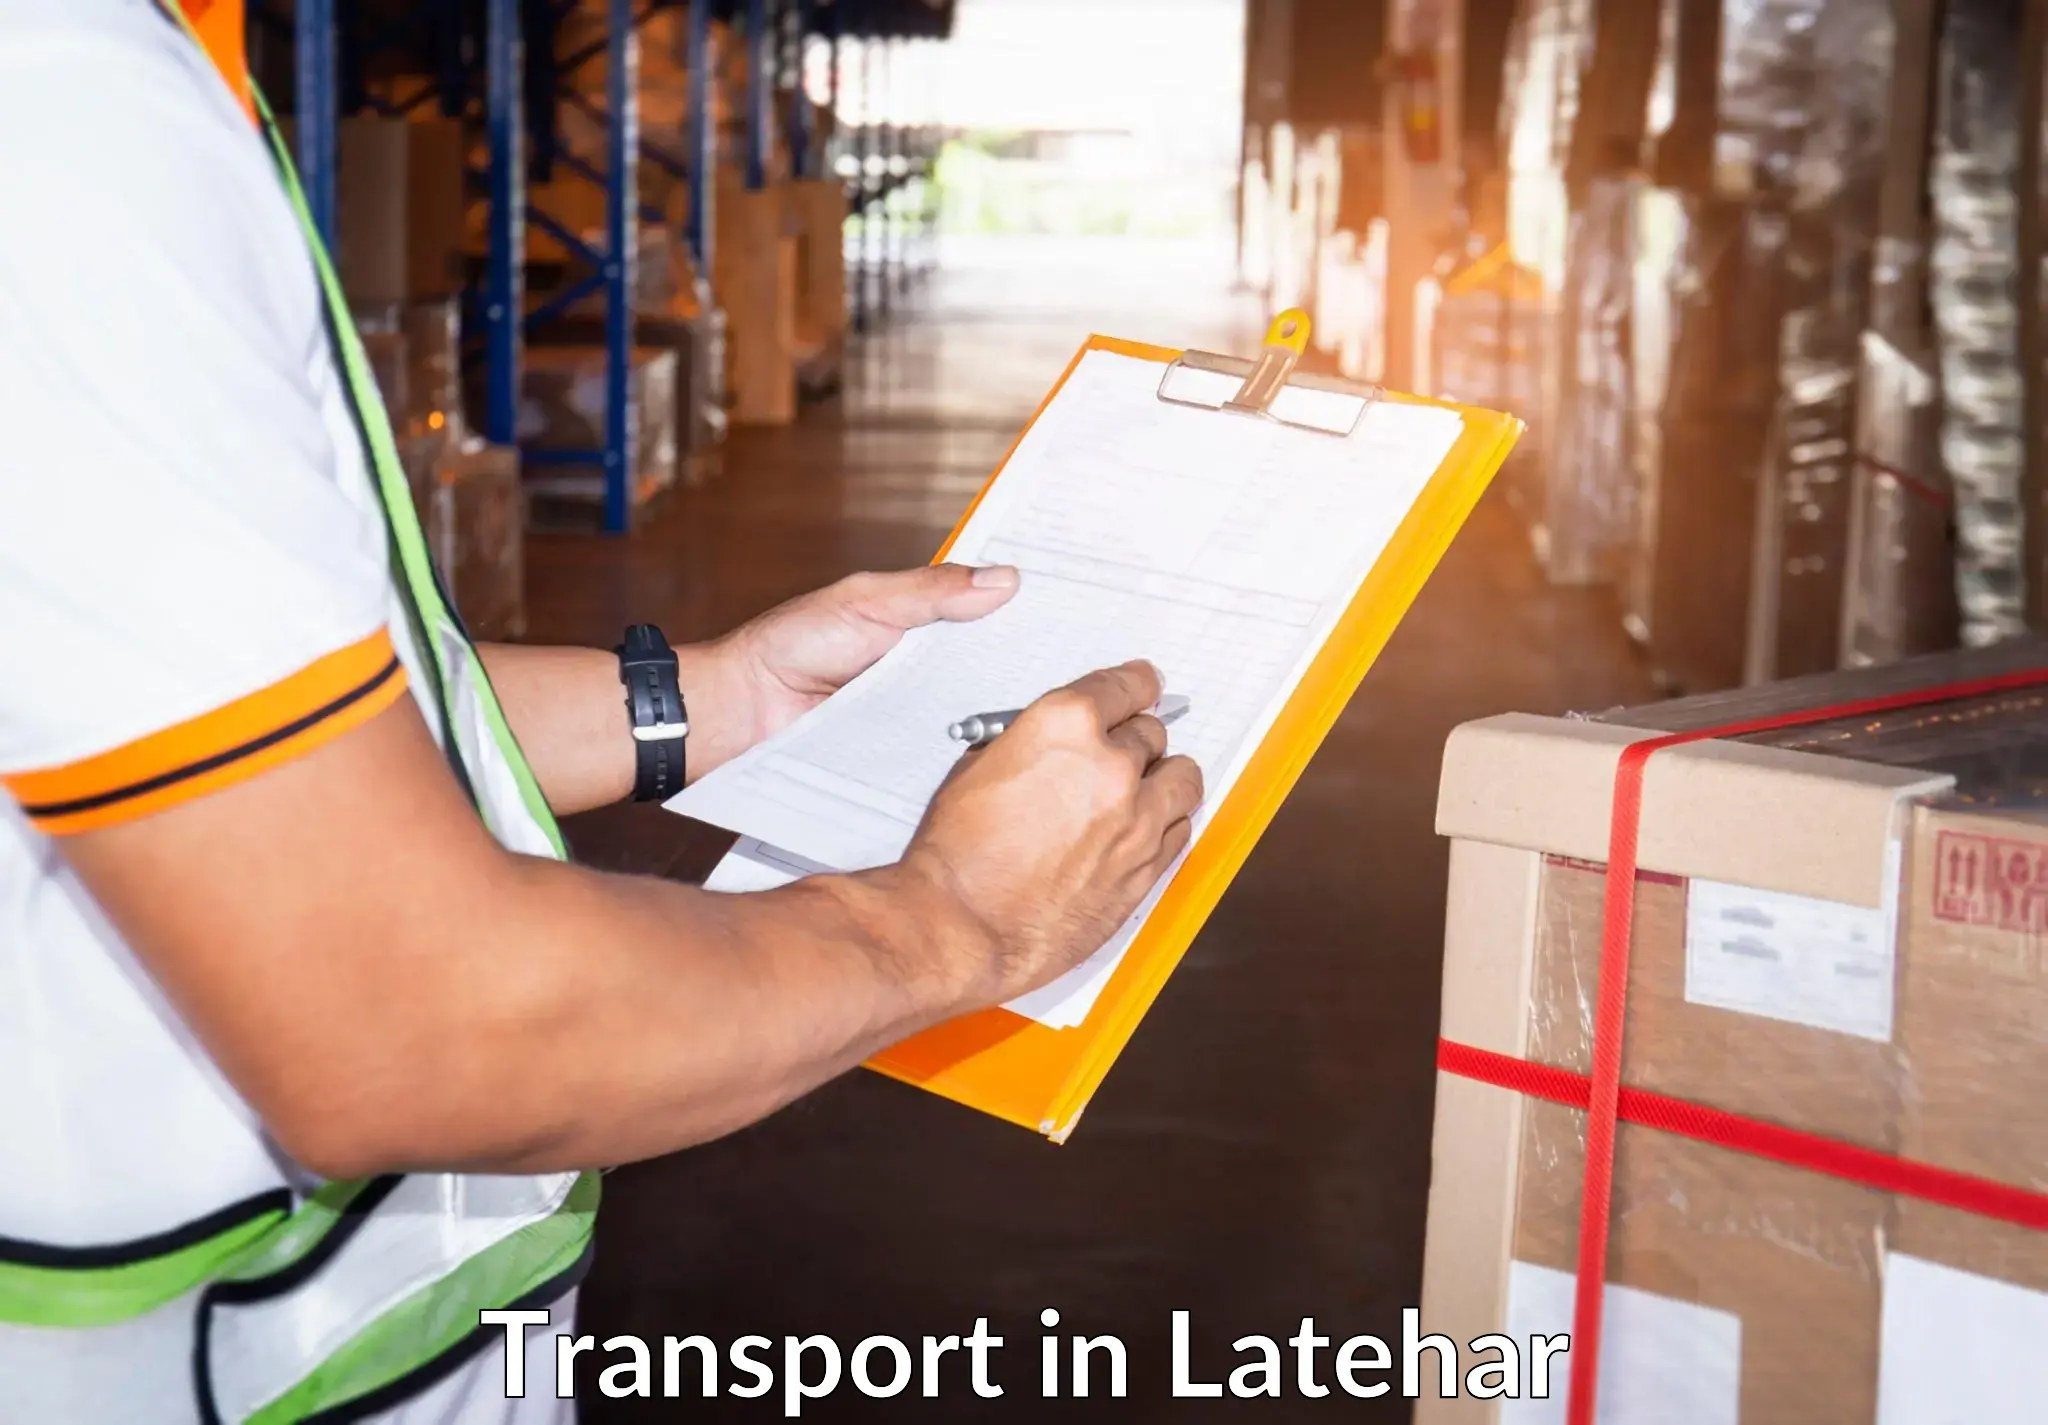 Intercity goods transport in Latehar